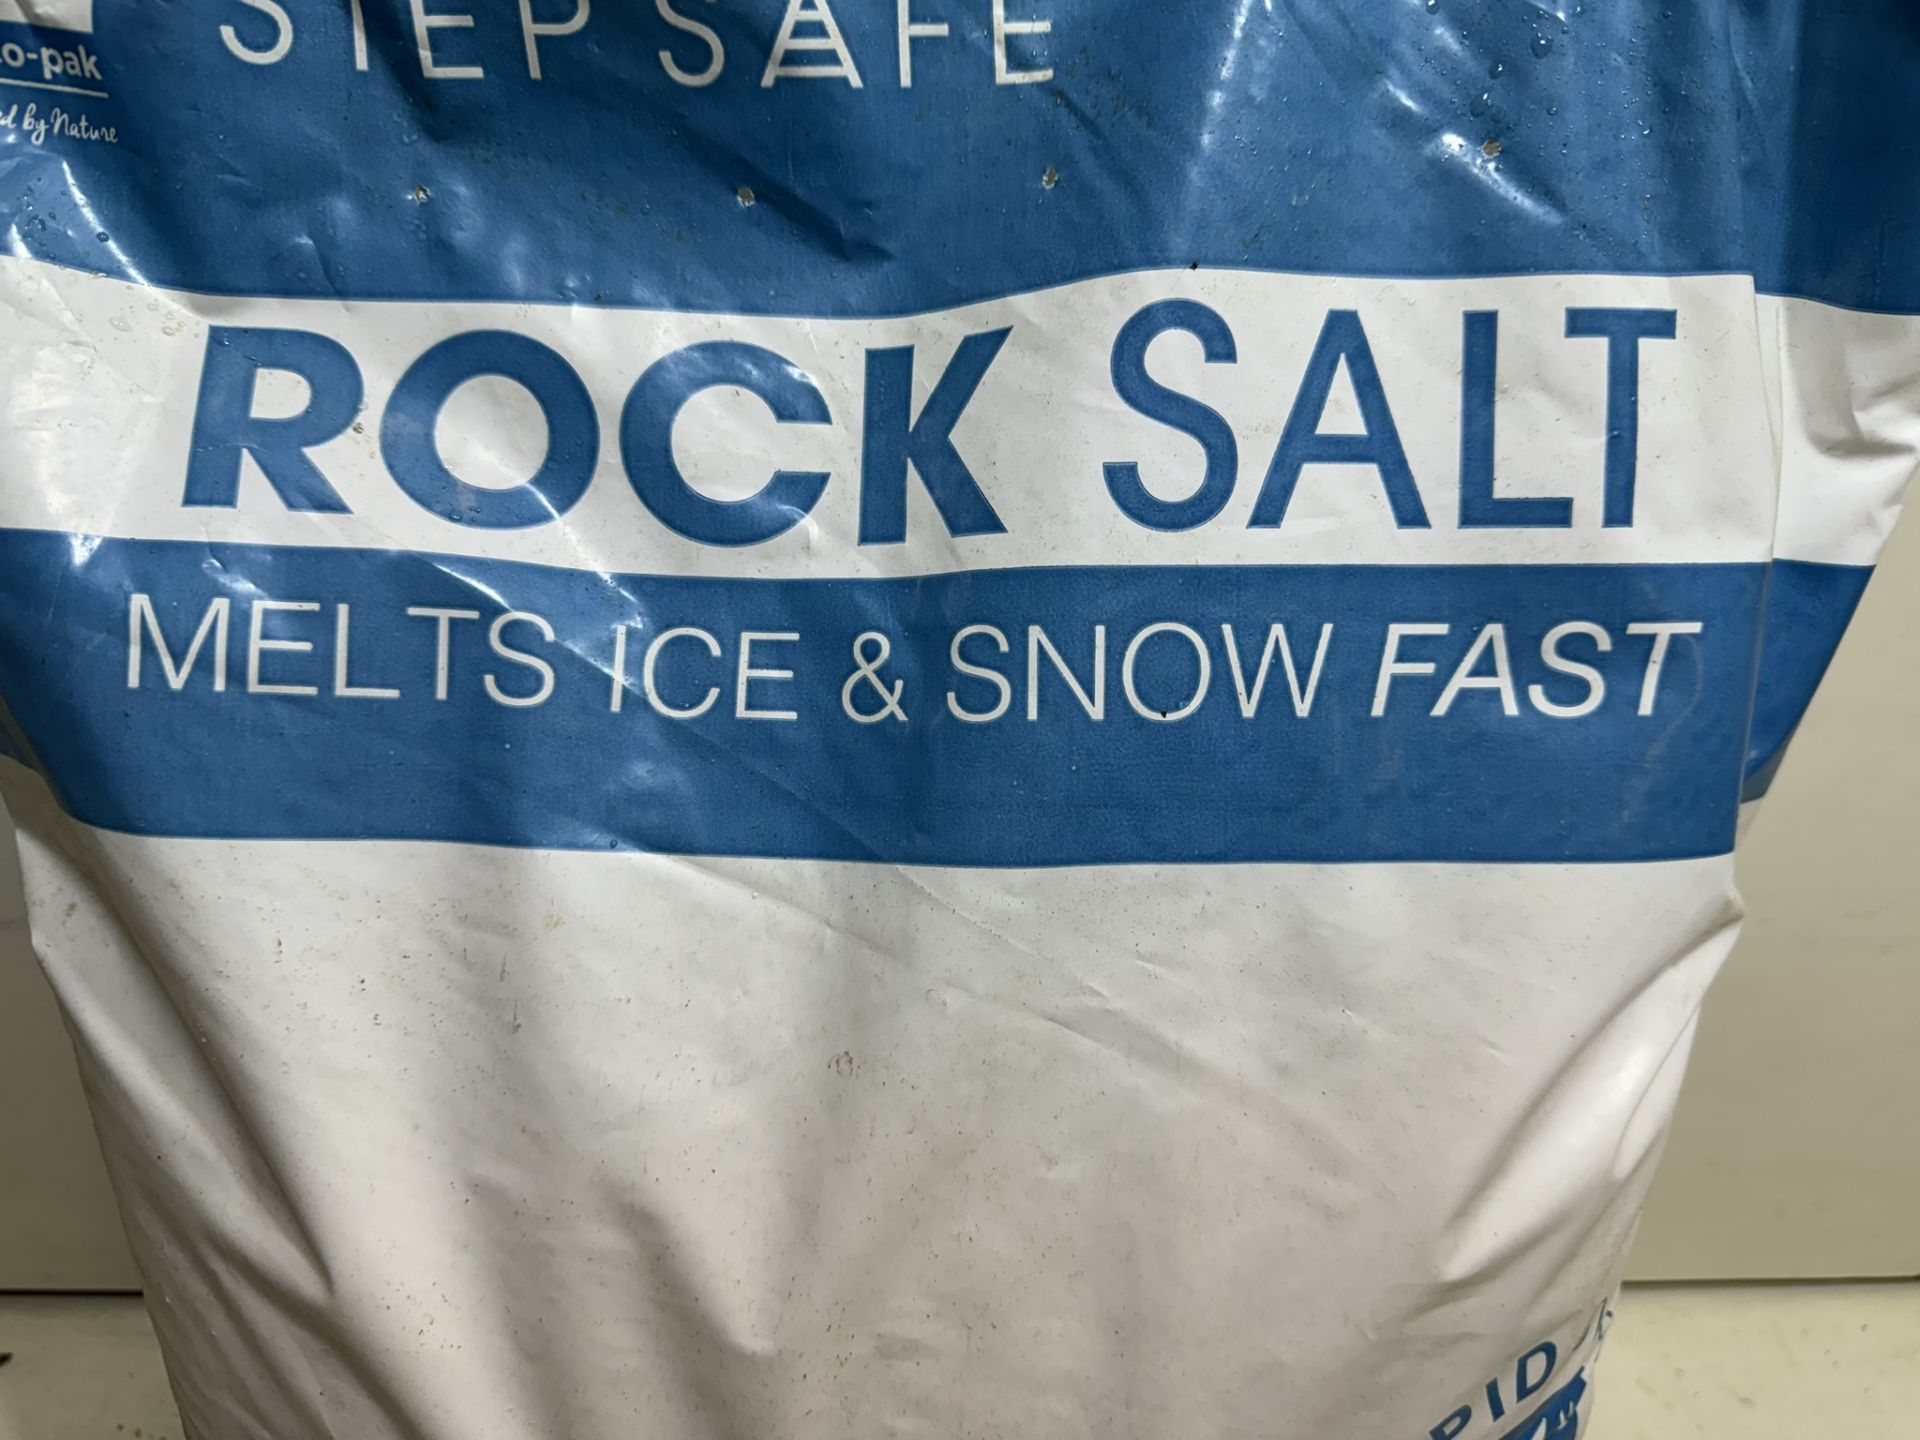 2 x Bags Of Step Safe Rock Salt - Image 3 of 3